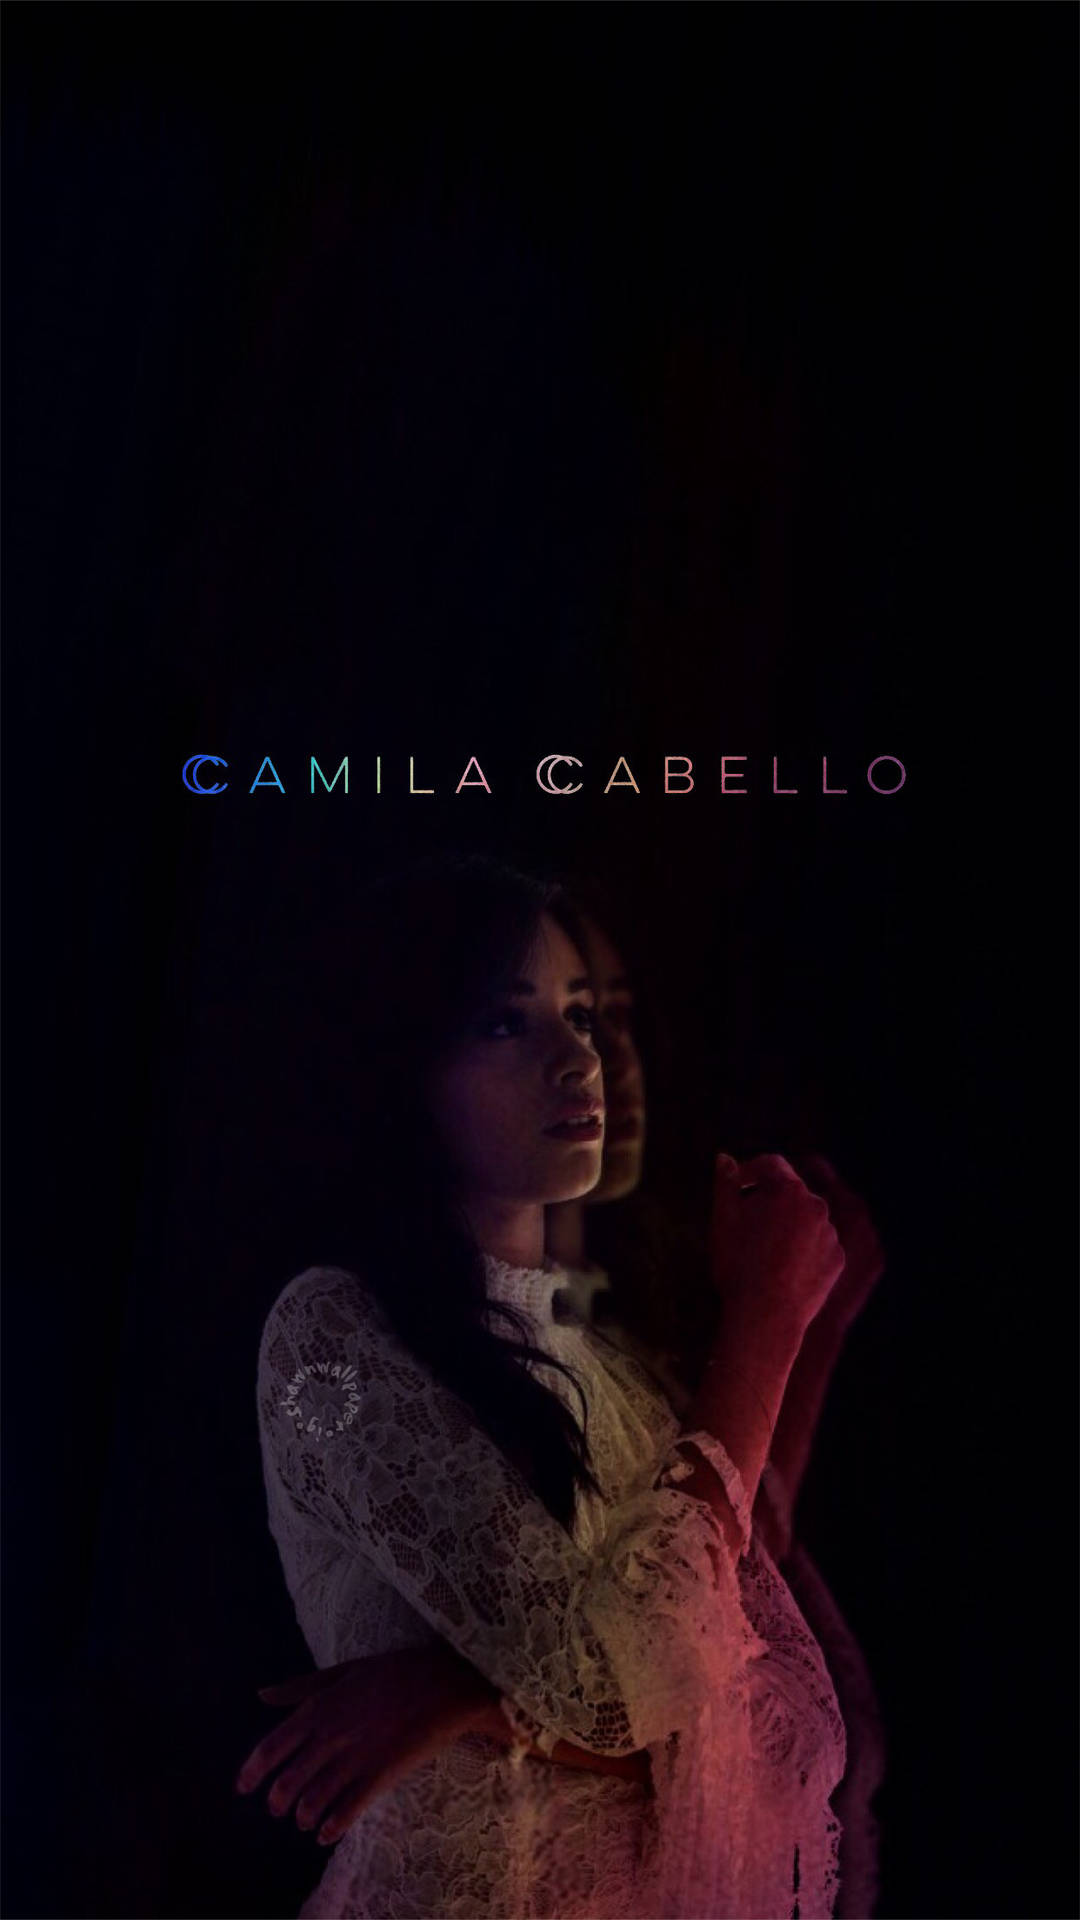 Grammy Artist Camila Cabello Background